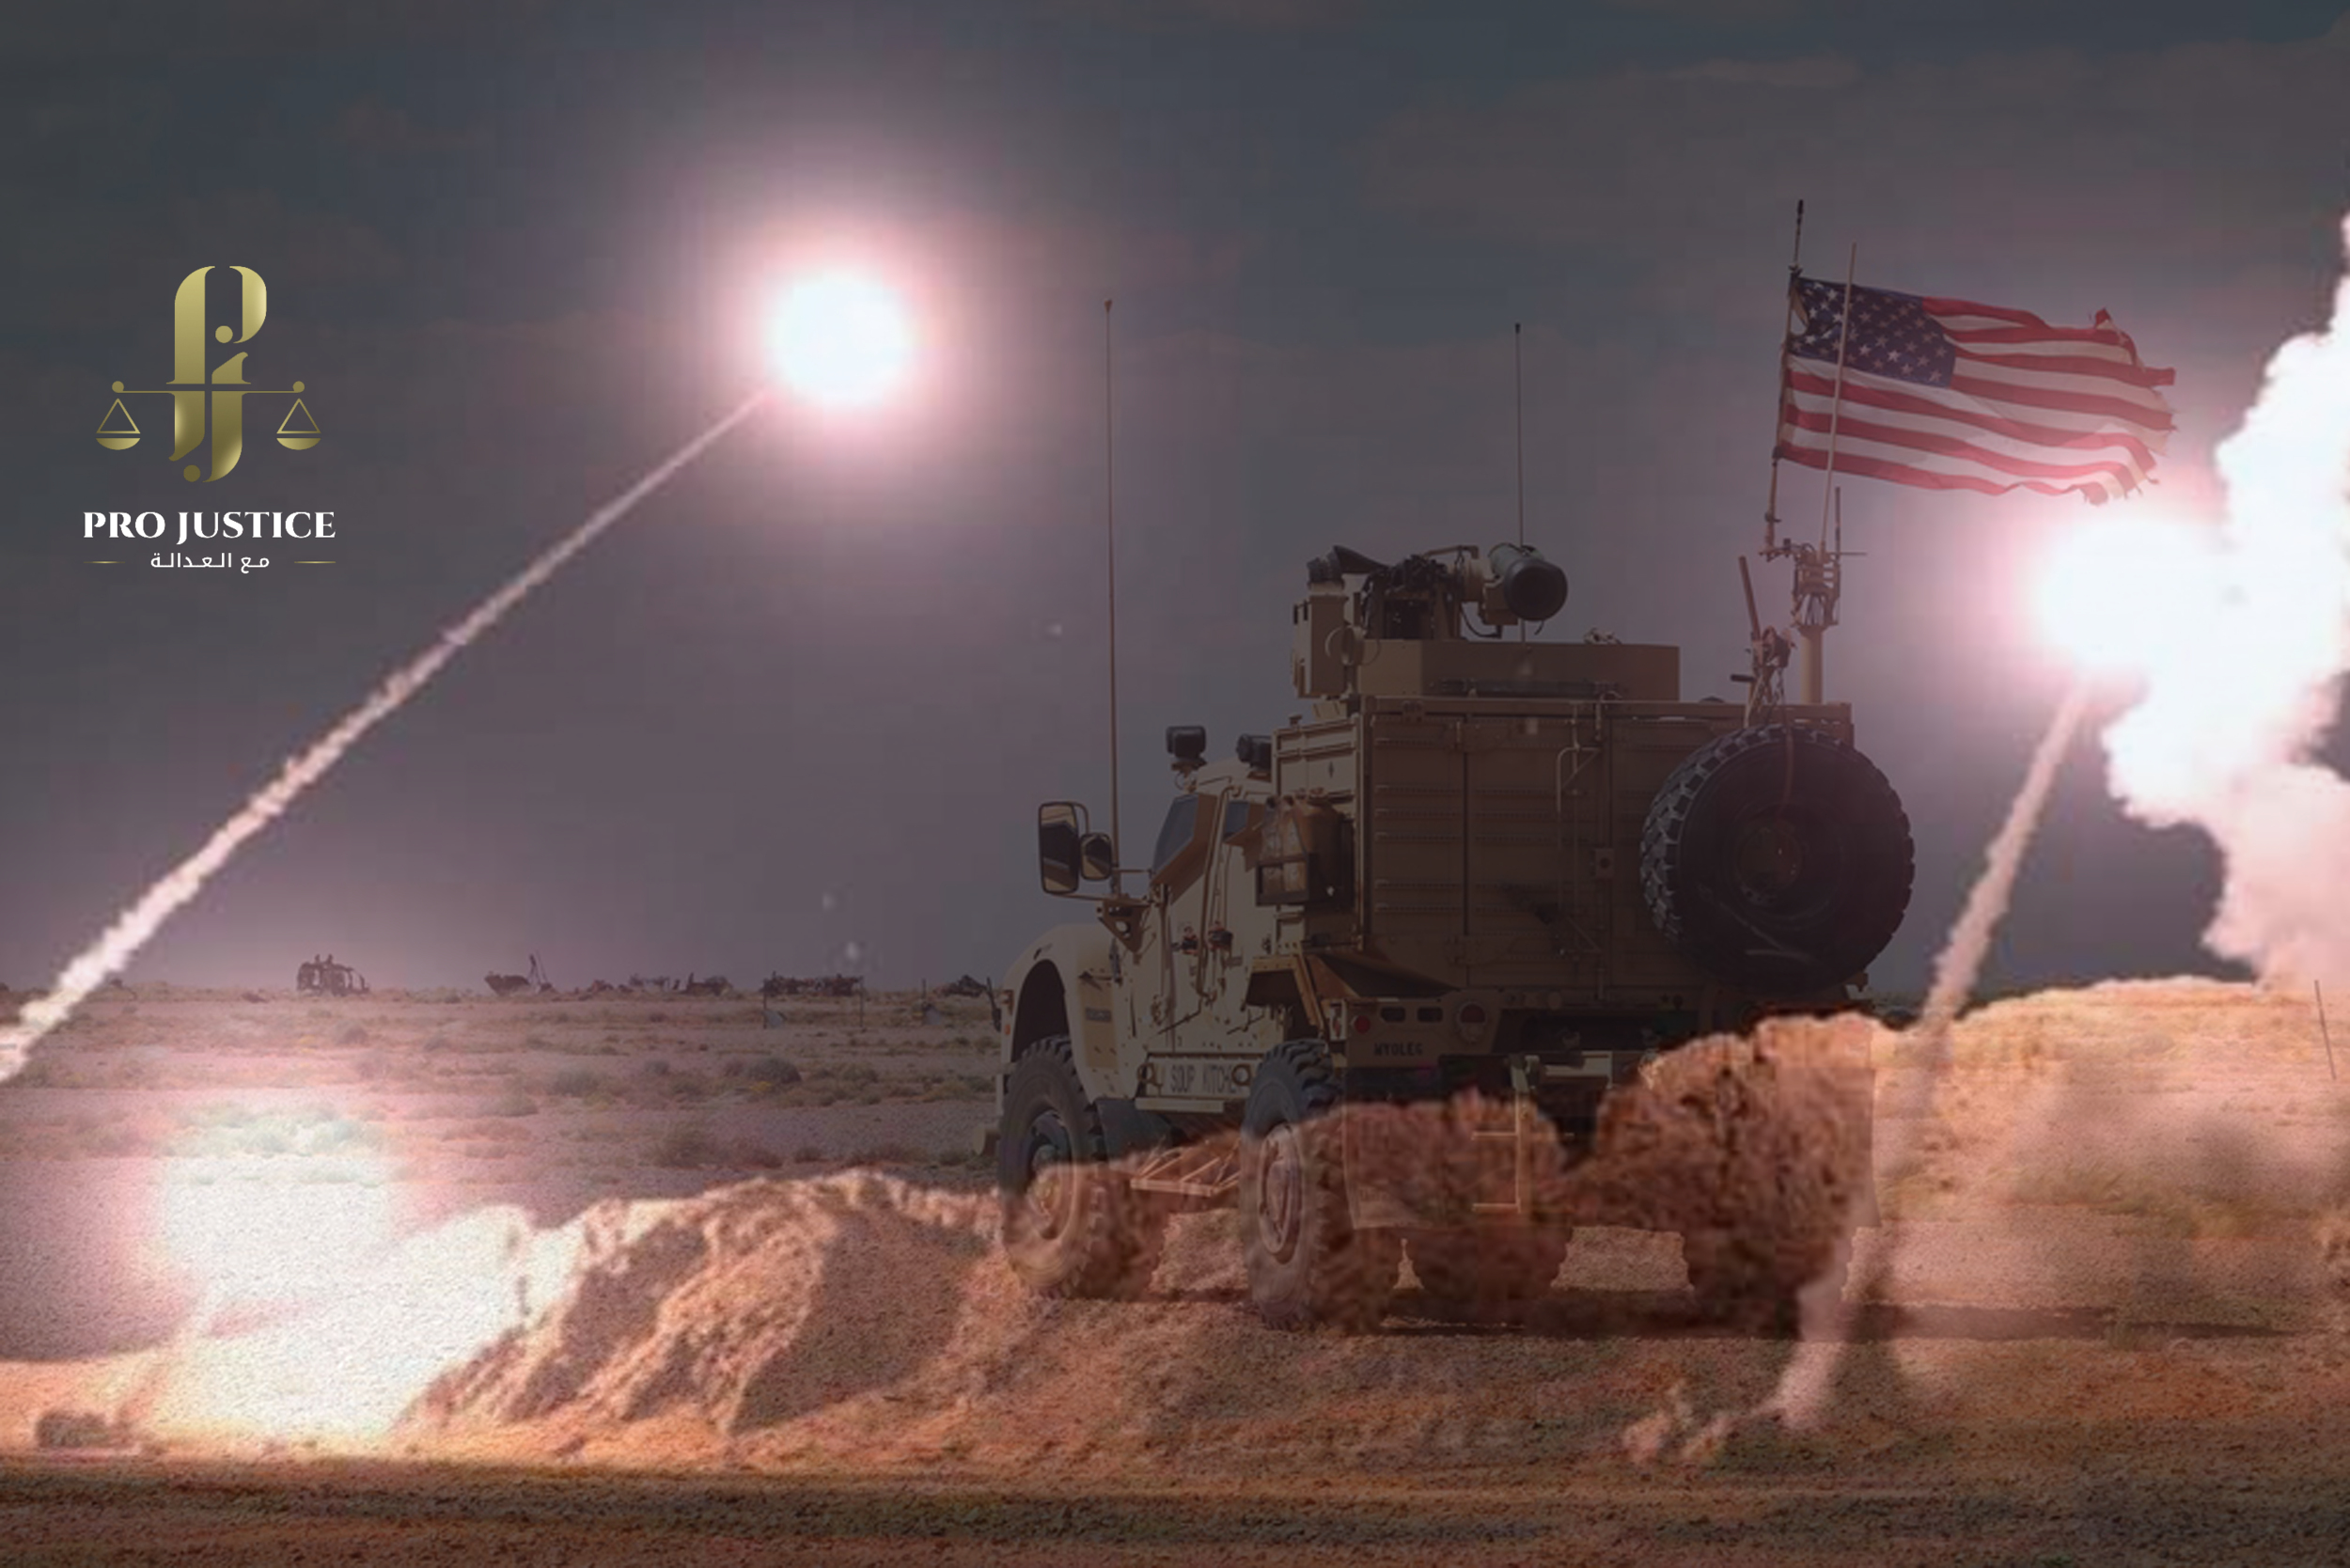 الولايات المتحدة: هجوم صاروخي فاشل استهدف القوات الأمريكية في سوريا